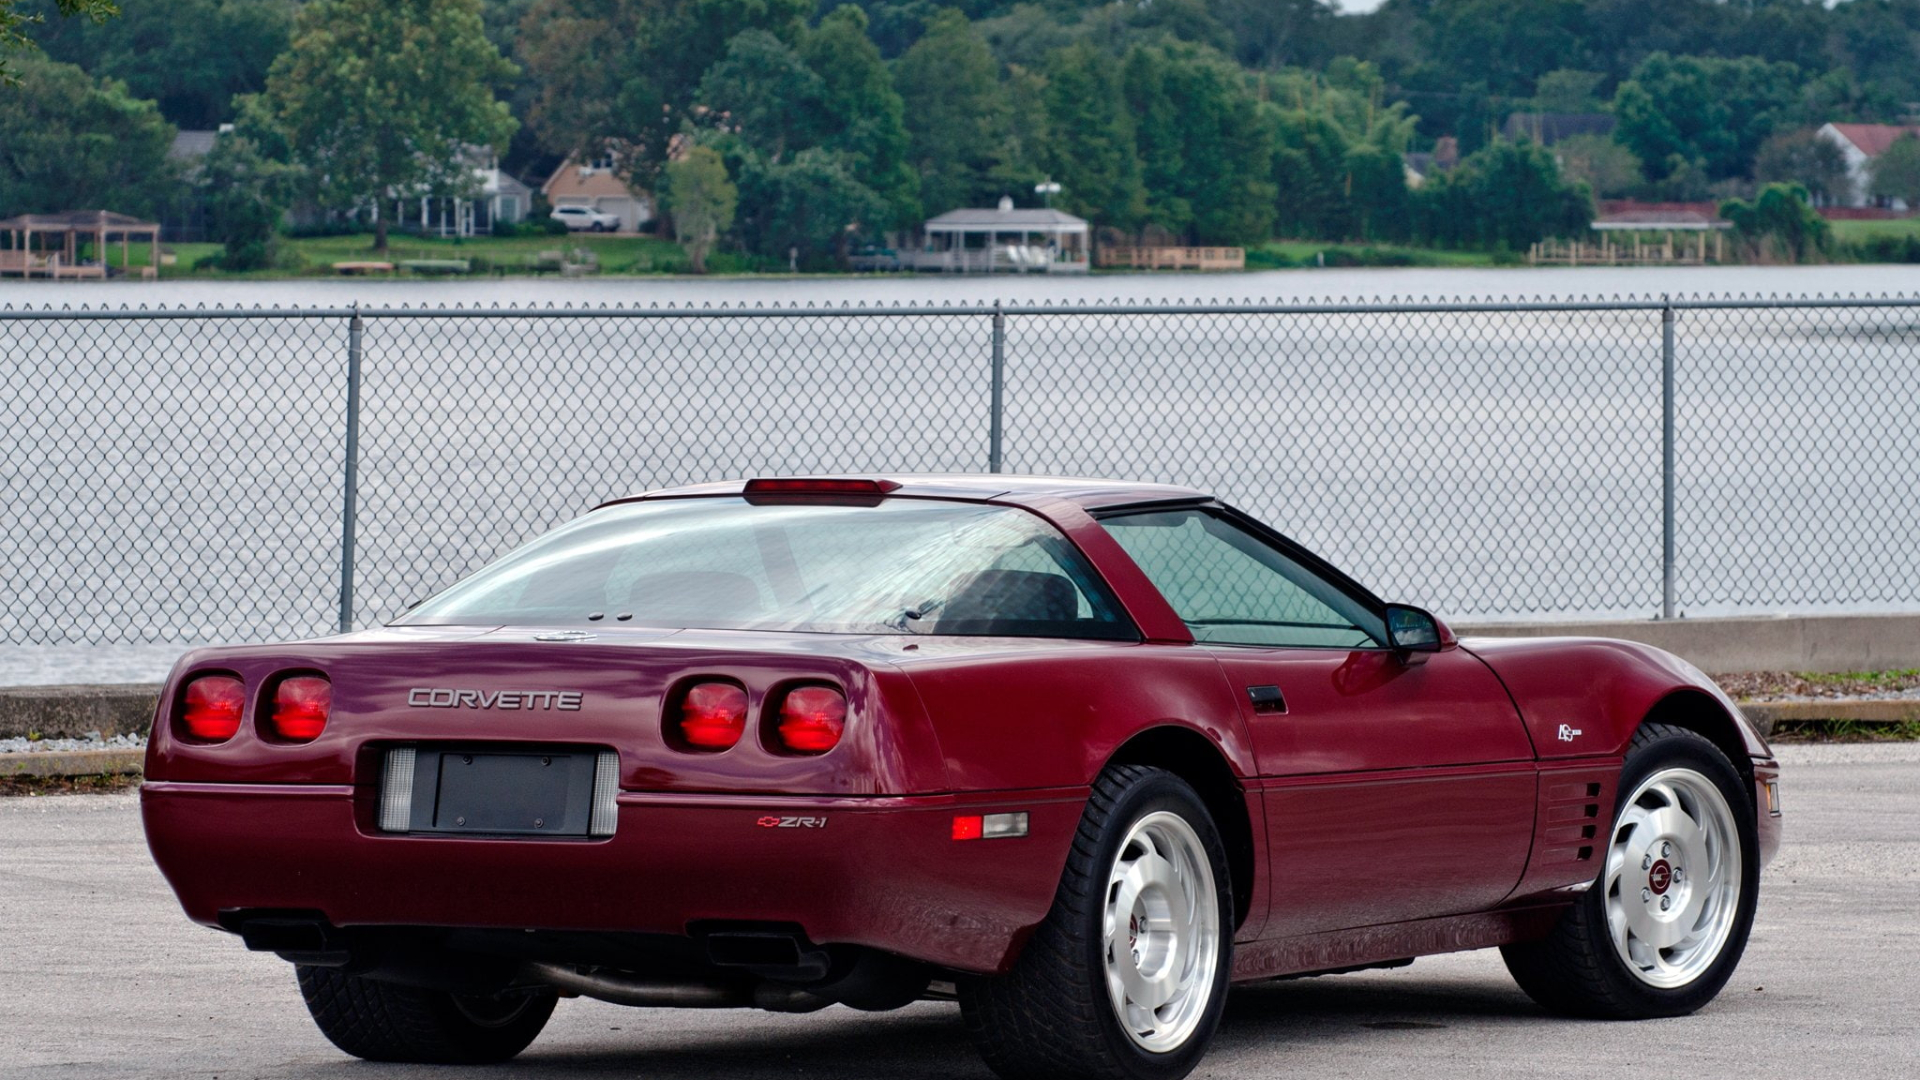 1993 Corvette Wallpapers